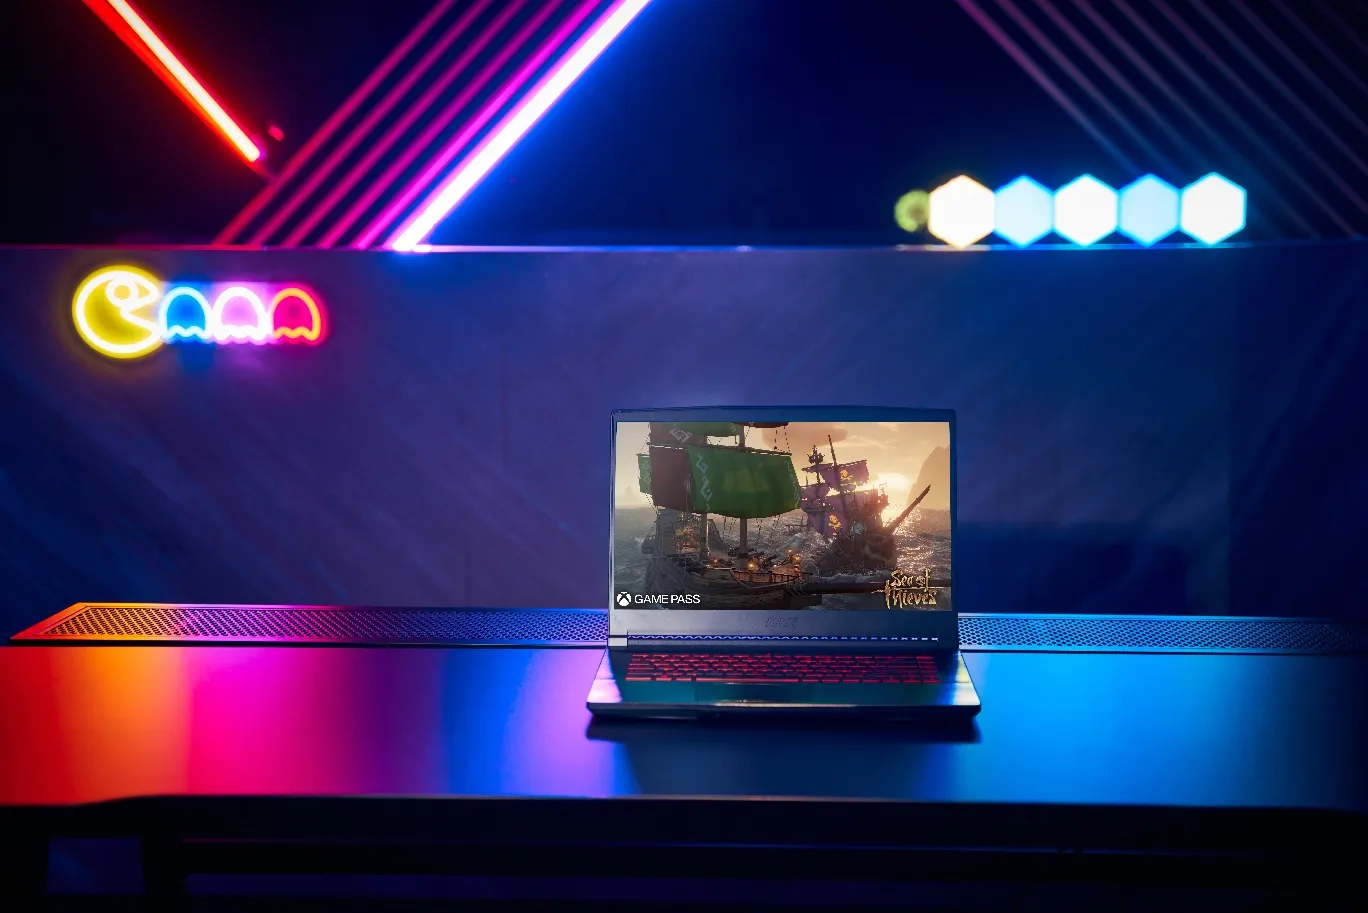 MSI Cyborg 15 và Thin GF63: Laptop gaming mỏng nhẹ, giá rẻ cho mùa lễ